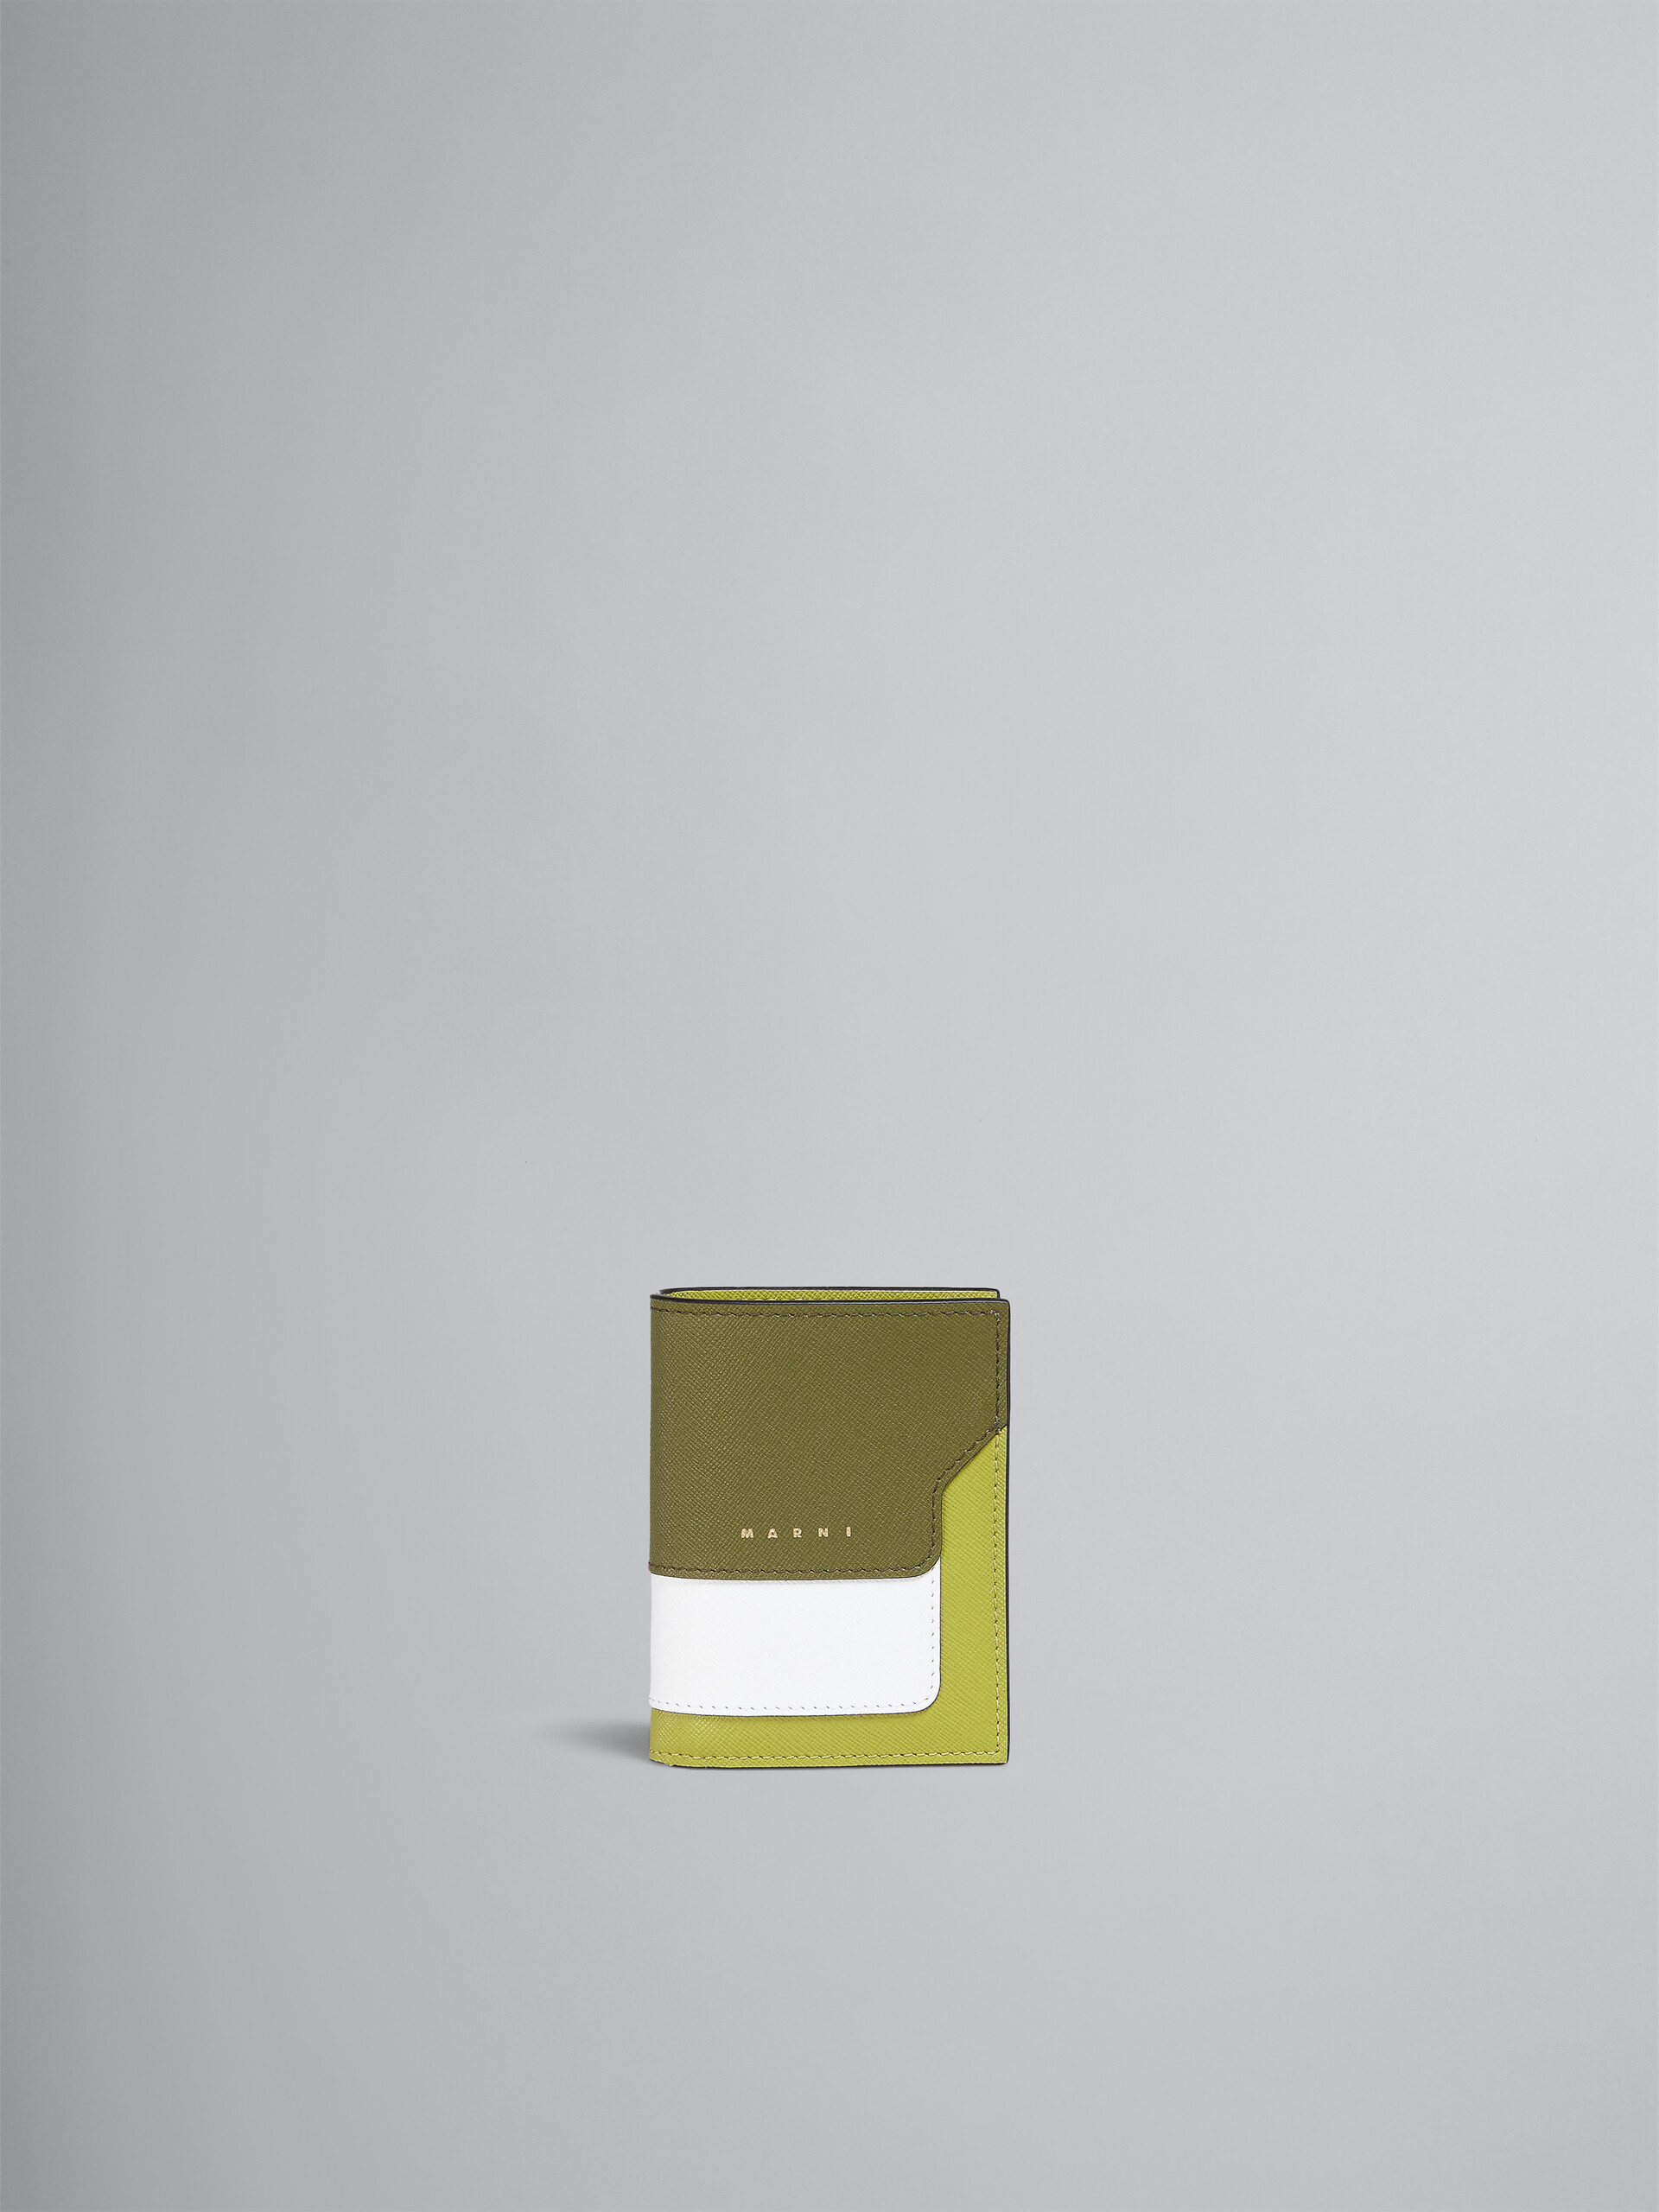 Portafoglio bi-fold in saffiano verde e bianco - Portafogli - Image 1